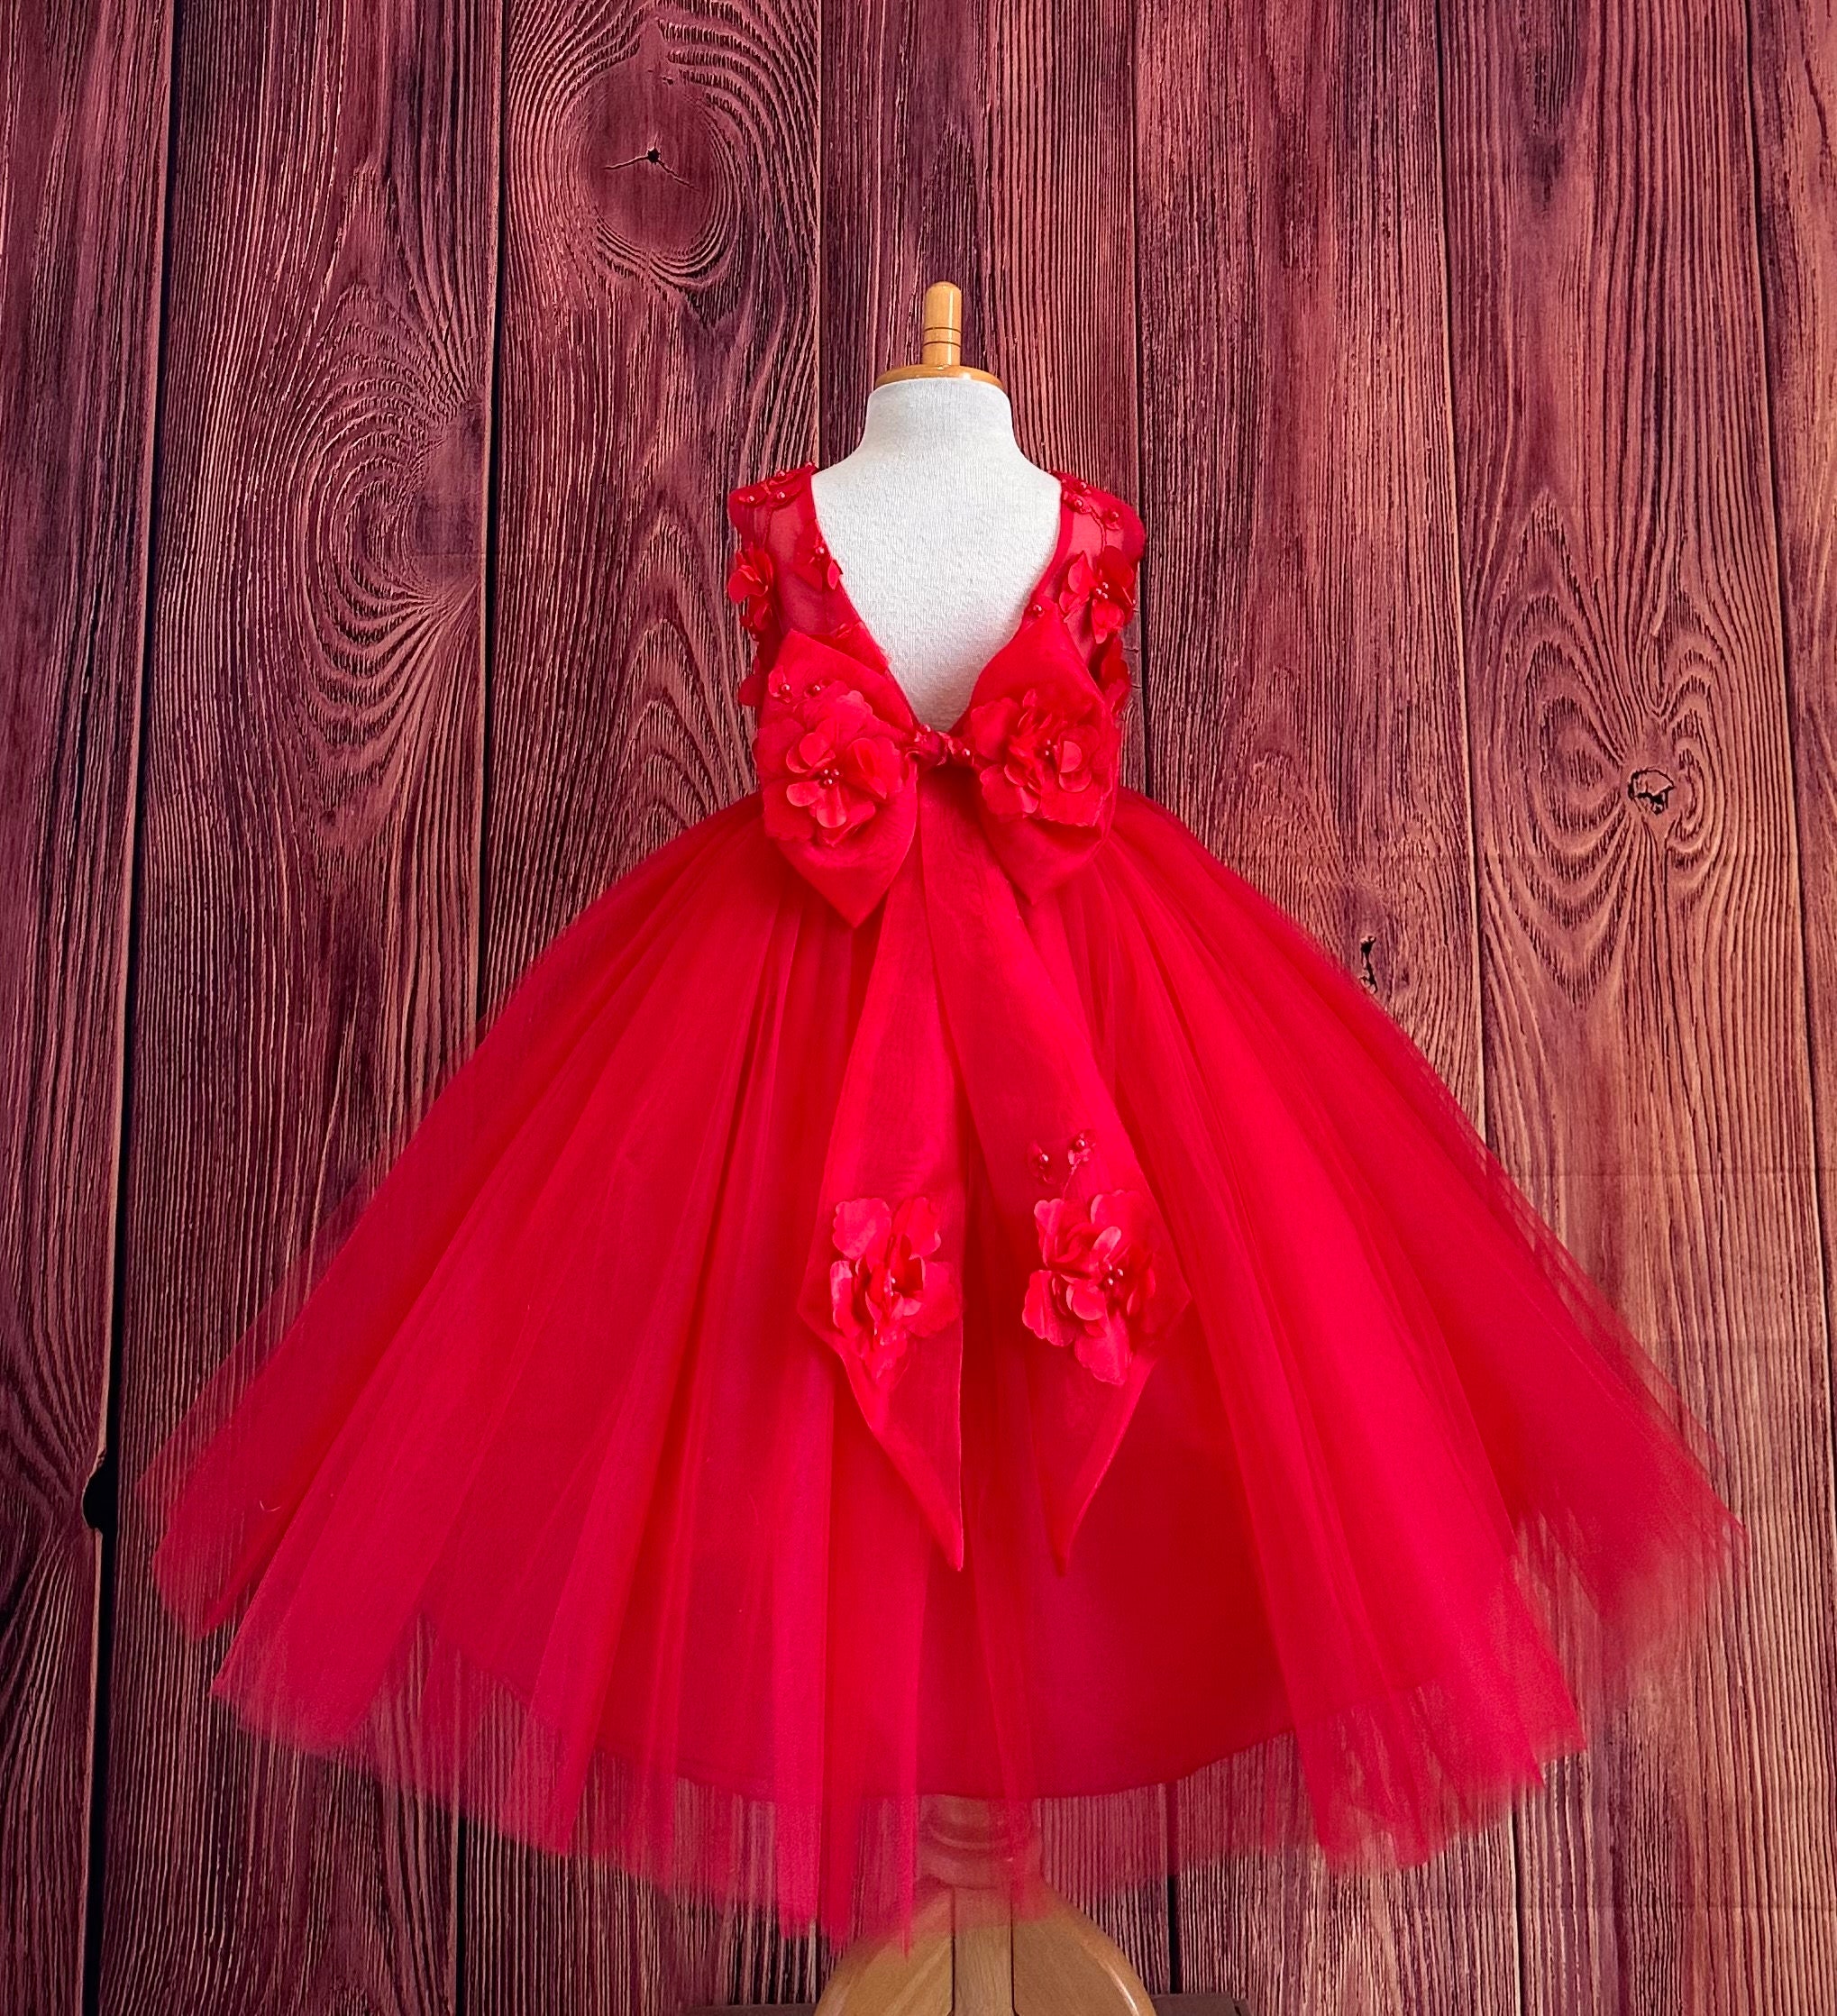 Mini Red Tulle Dress, Tulle Dress, Red Corset Tulle Dress, Tutu Dress,  Layered Dress, Flared Ruffle Dress, Mini Dress, Furbelow Dress 